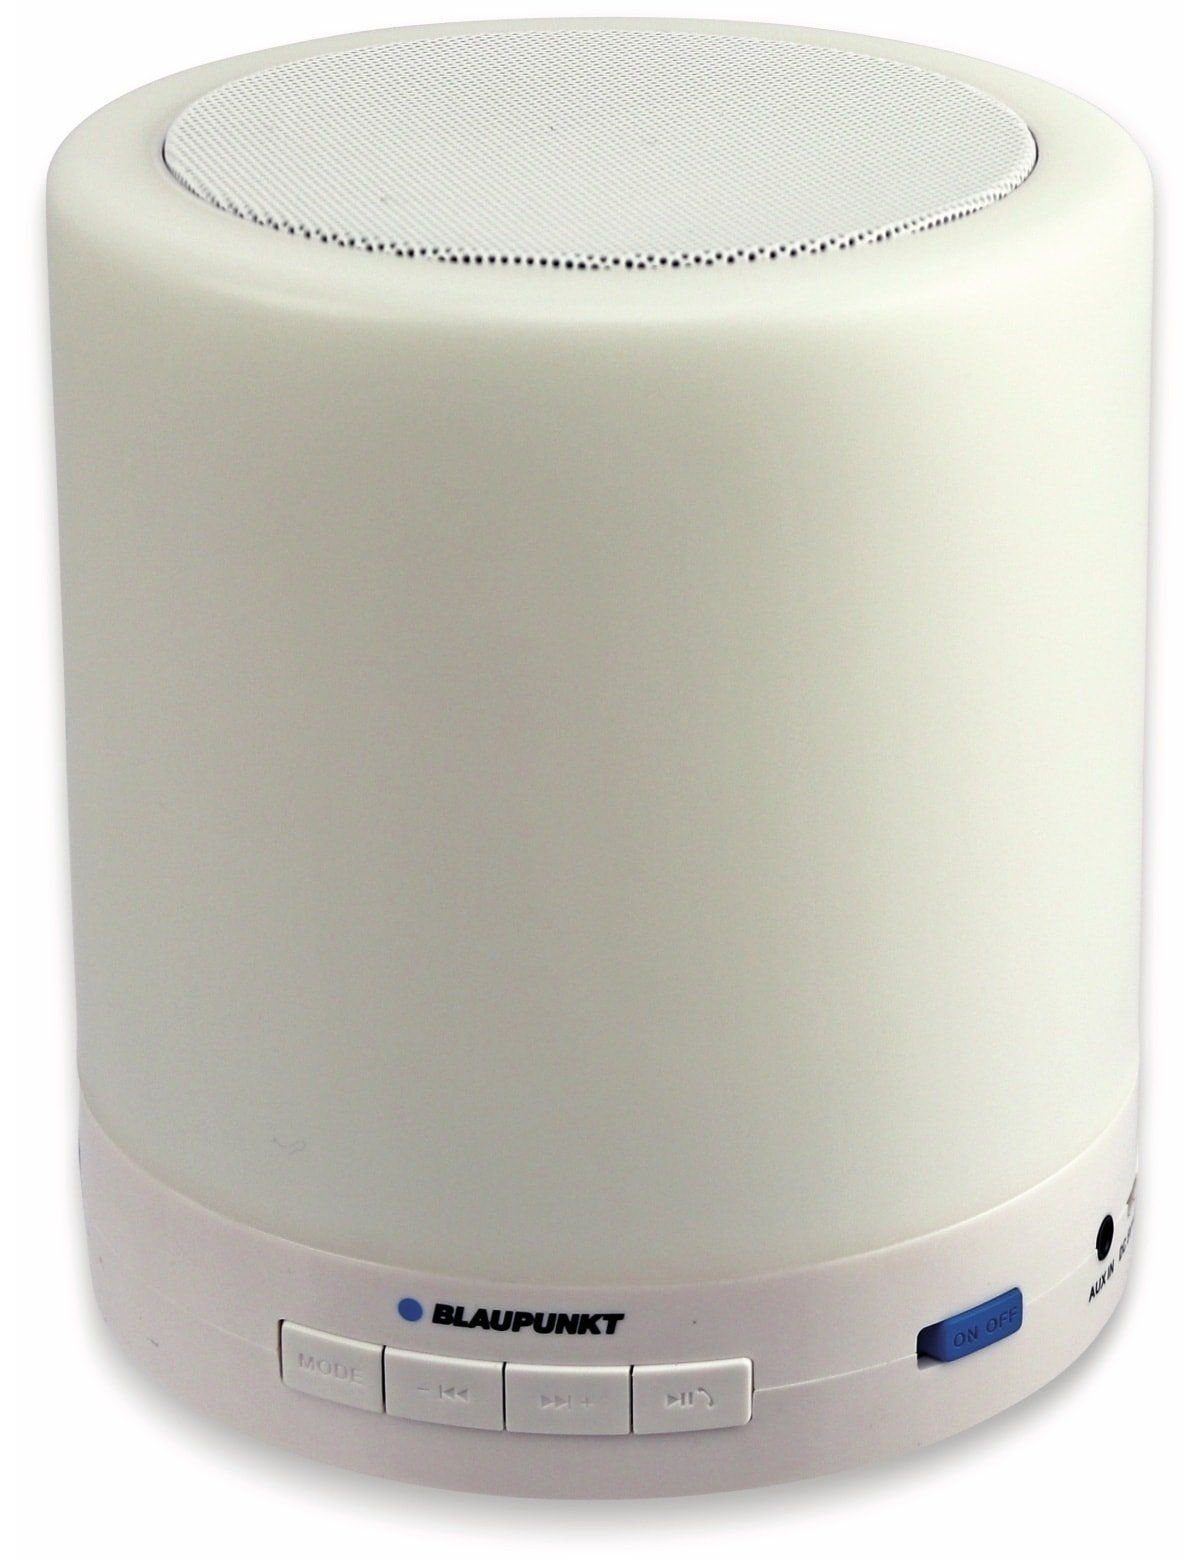 Portable-Lautsprecher Blaupunkt Lautsprecher, Bluetooth 100 BLAUPUNKT BTL